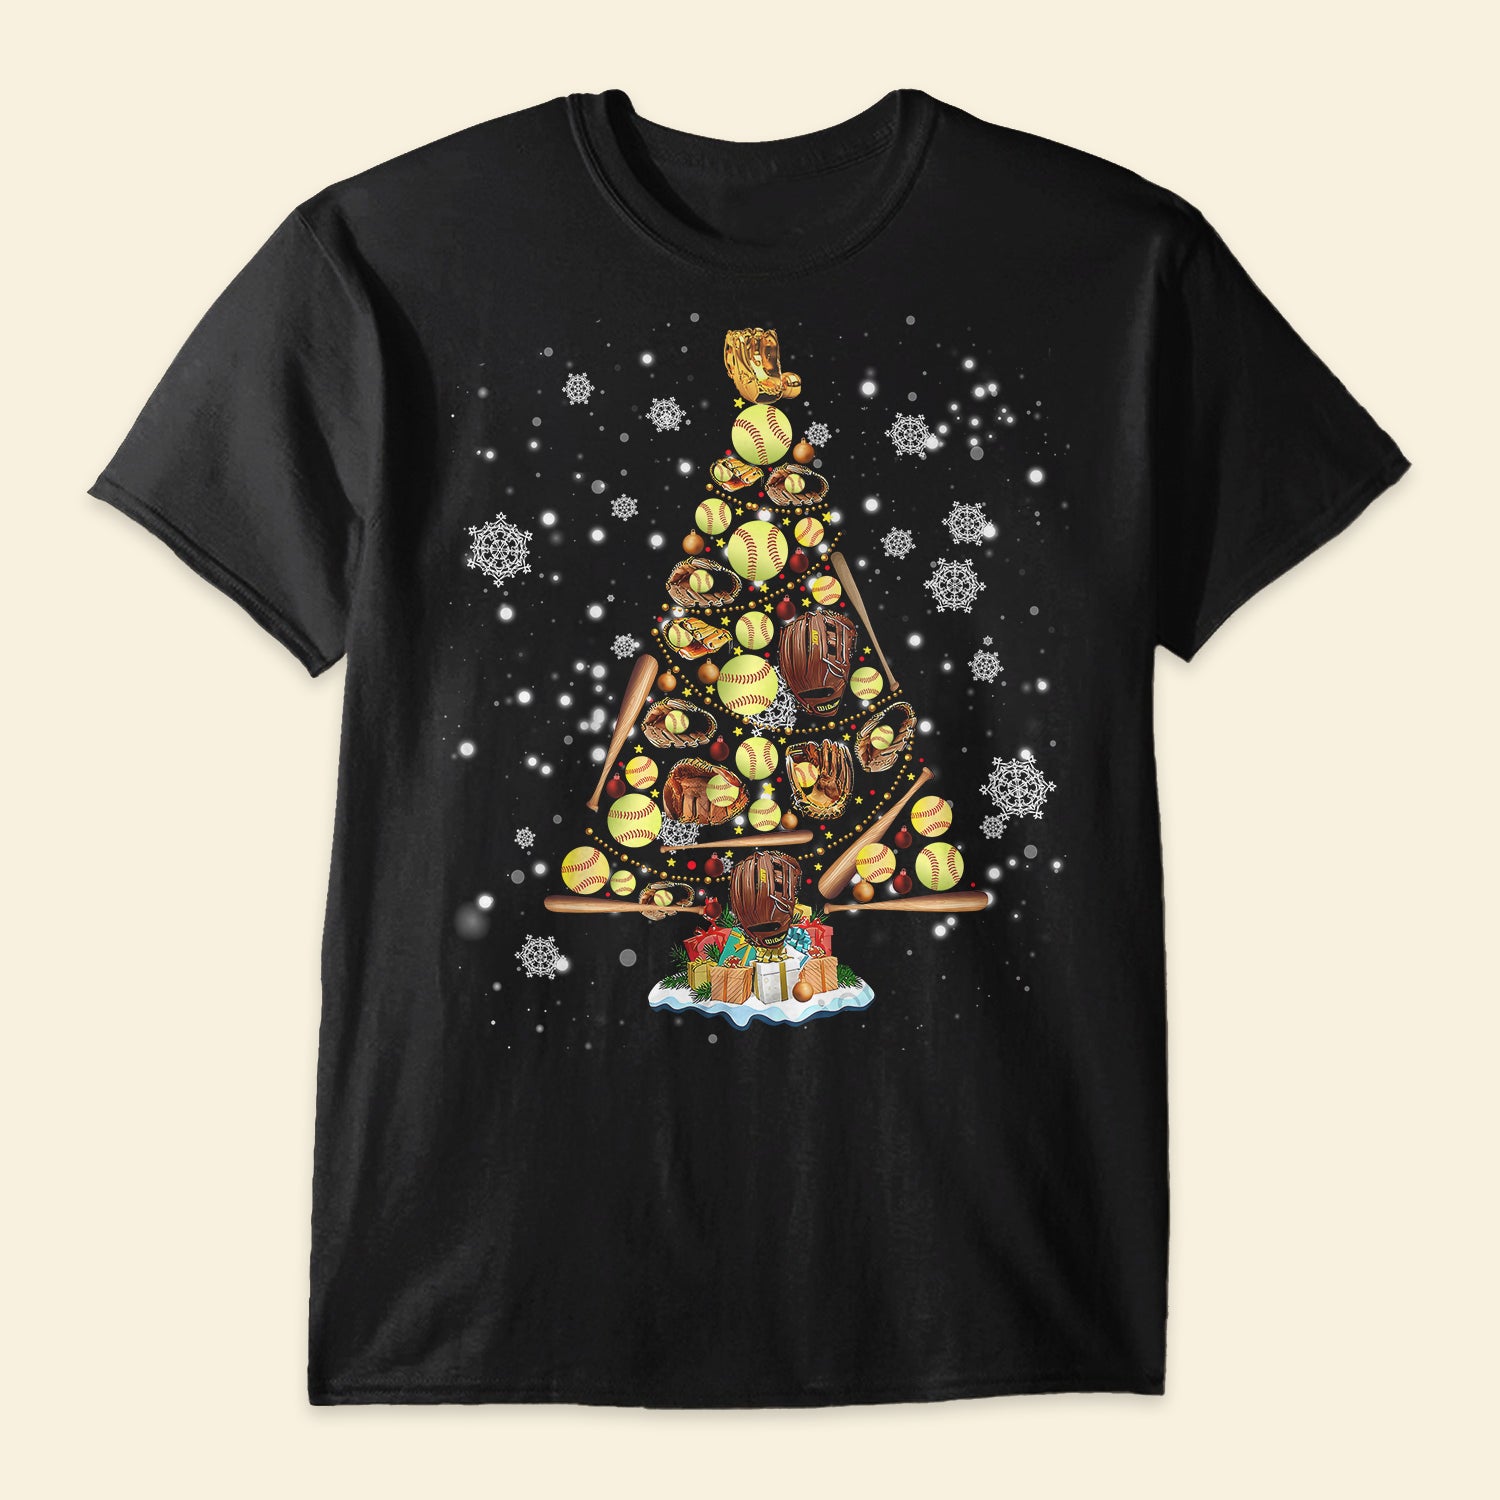 Softball Christmas Tree - Shirt Gift Christmas